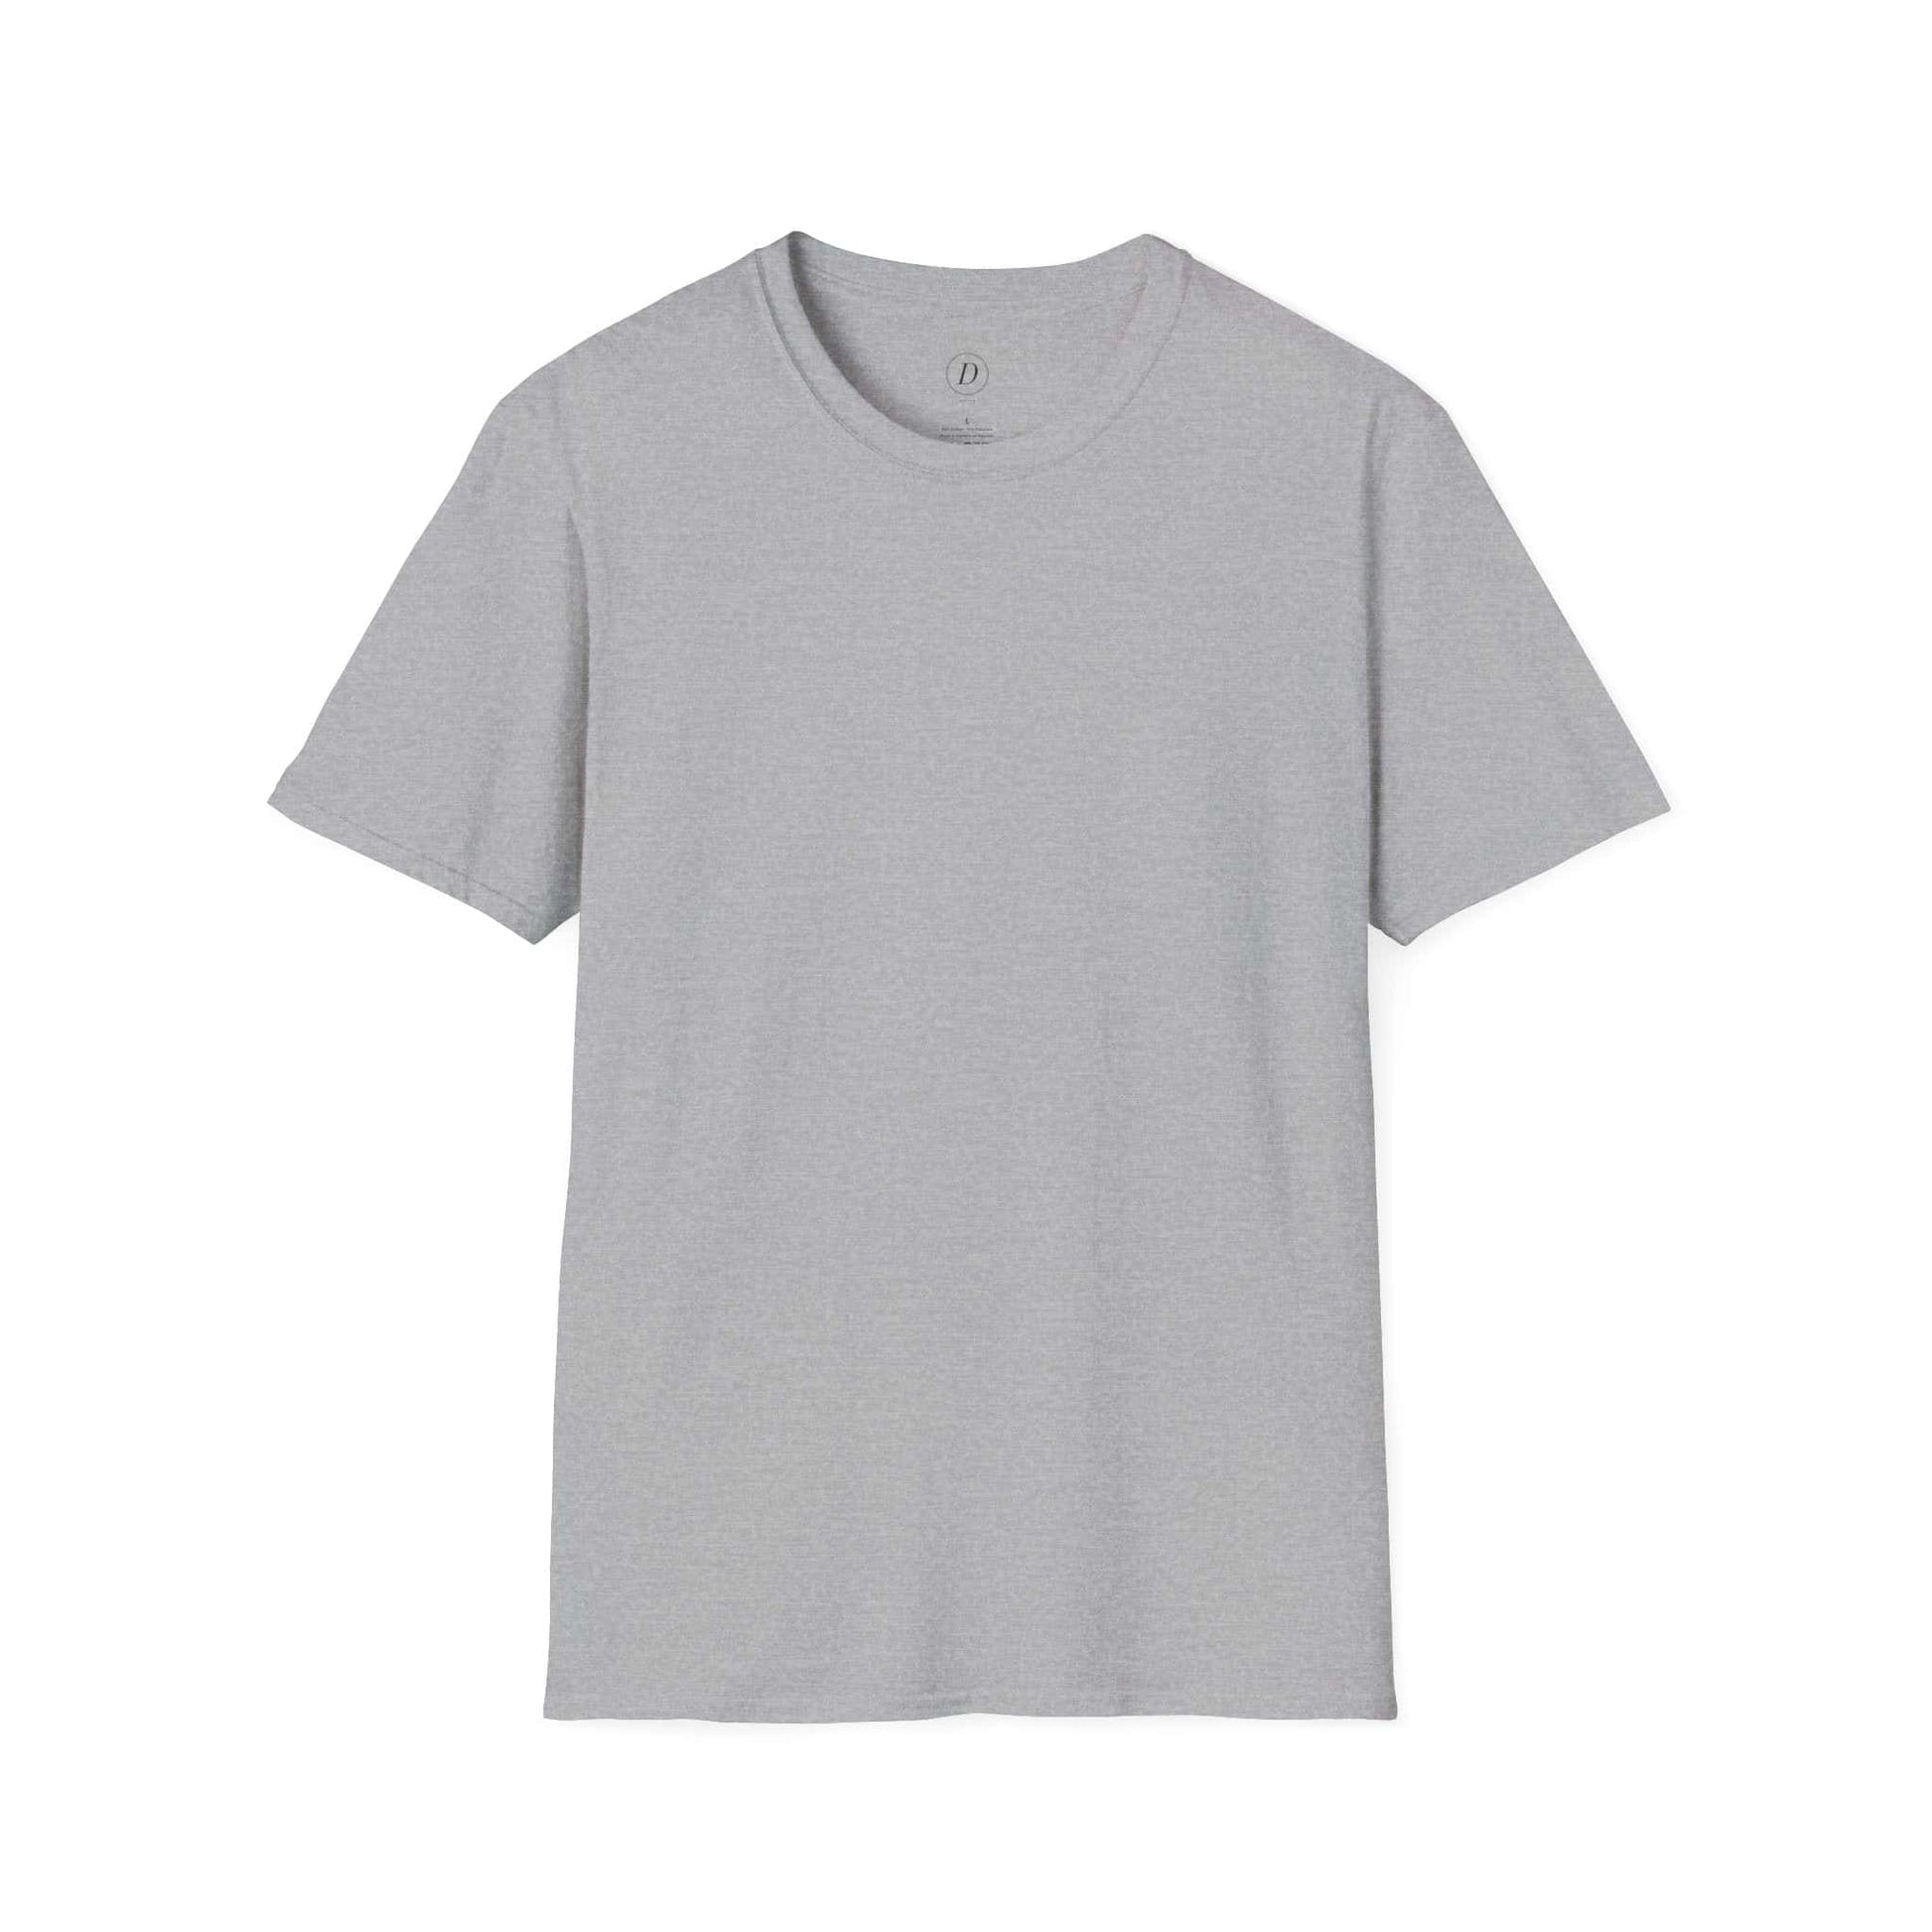 Blank Unisex Softstyle T-Shirt 